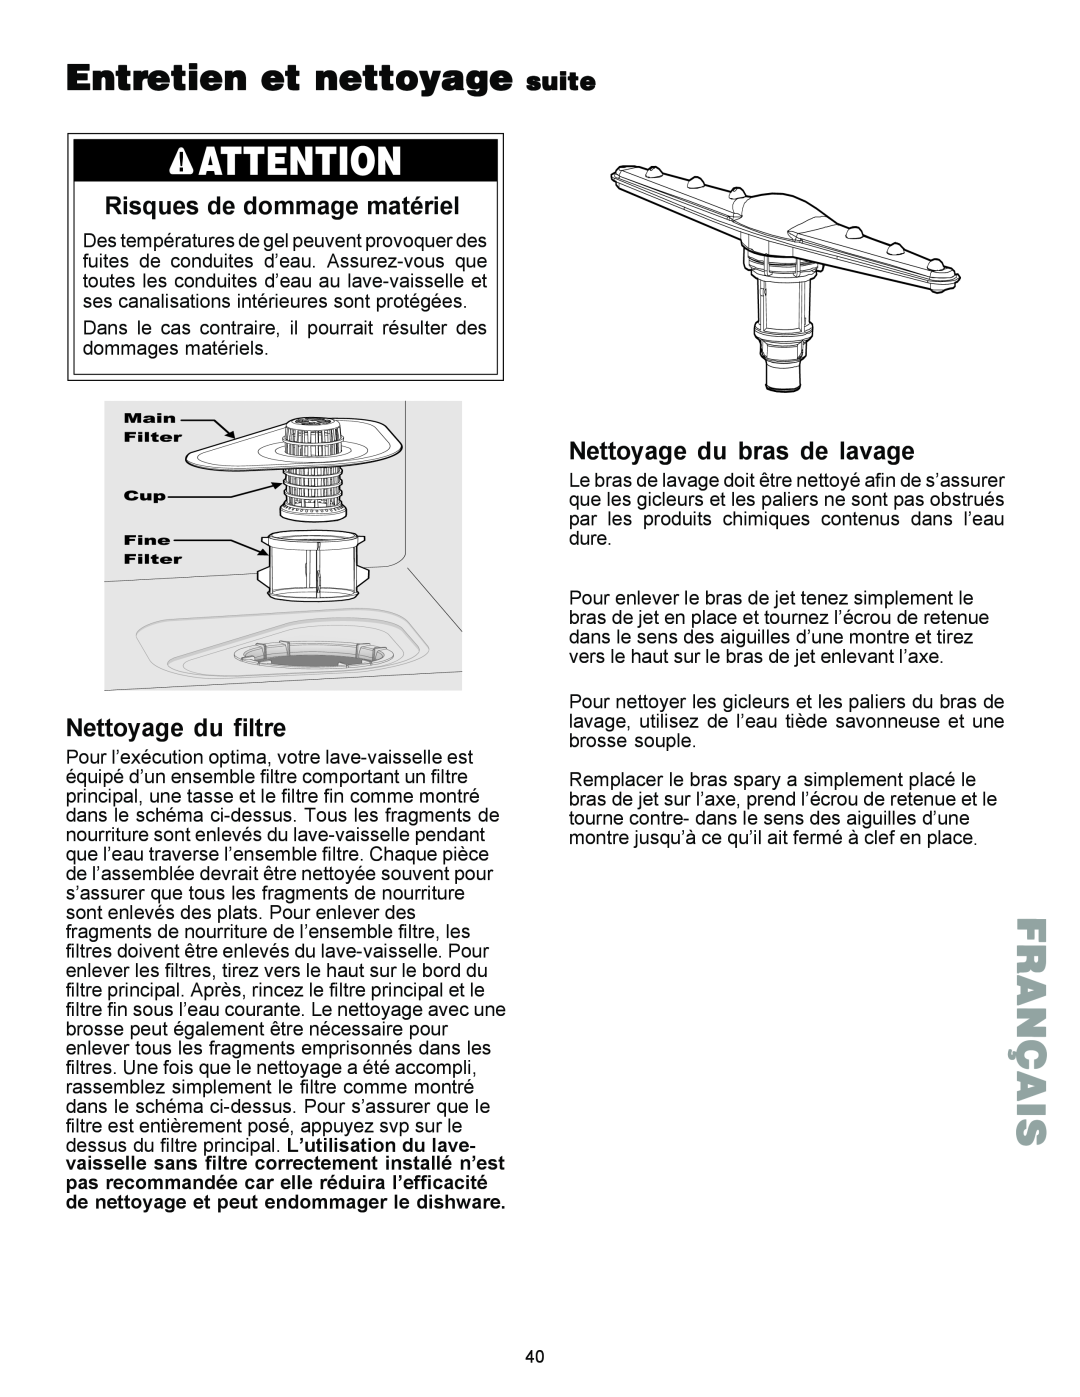 Kenmore 587.1441 manual Entretien et nettoyage suite, Risques de dommage matériel, Nettoyage du filtre, Français 